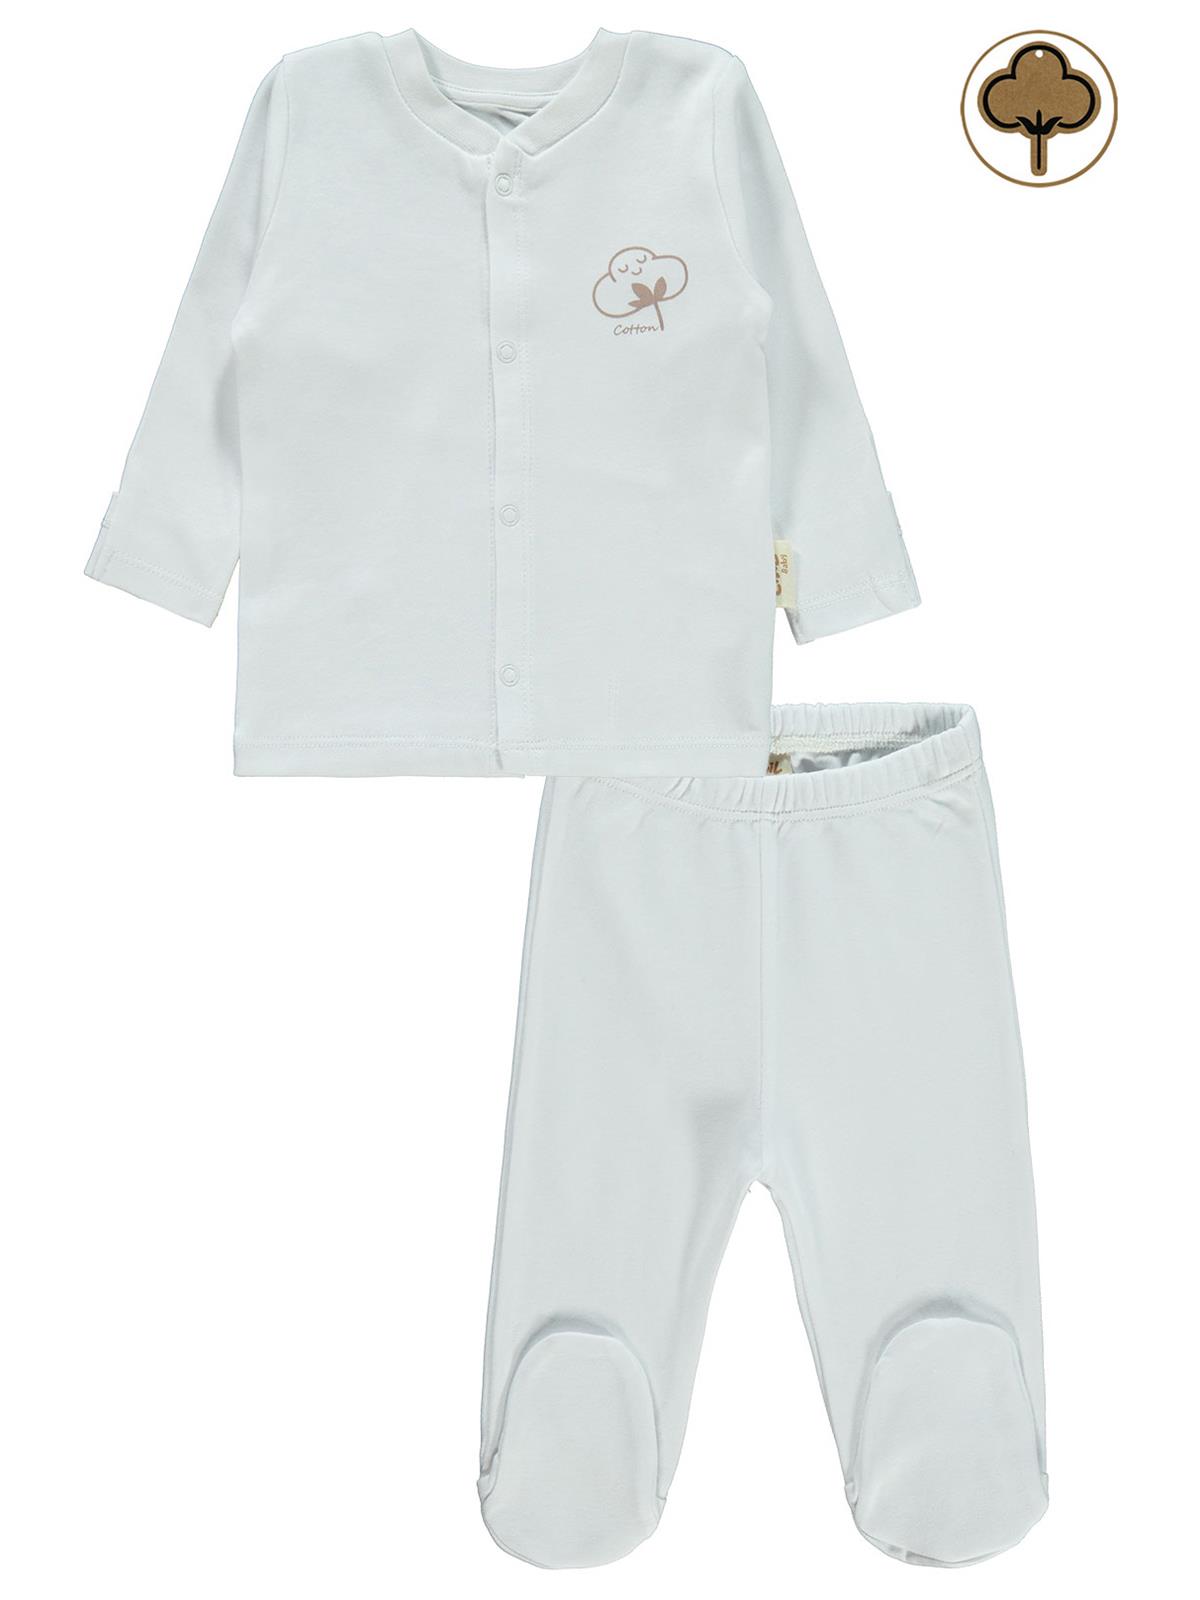 Civil Baby Bebek Organik Pijama Takımı 0-6 Ay Beyaz